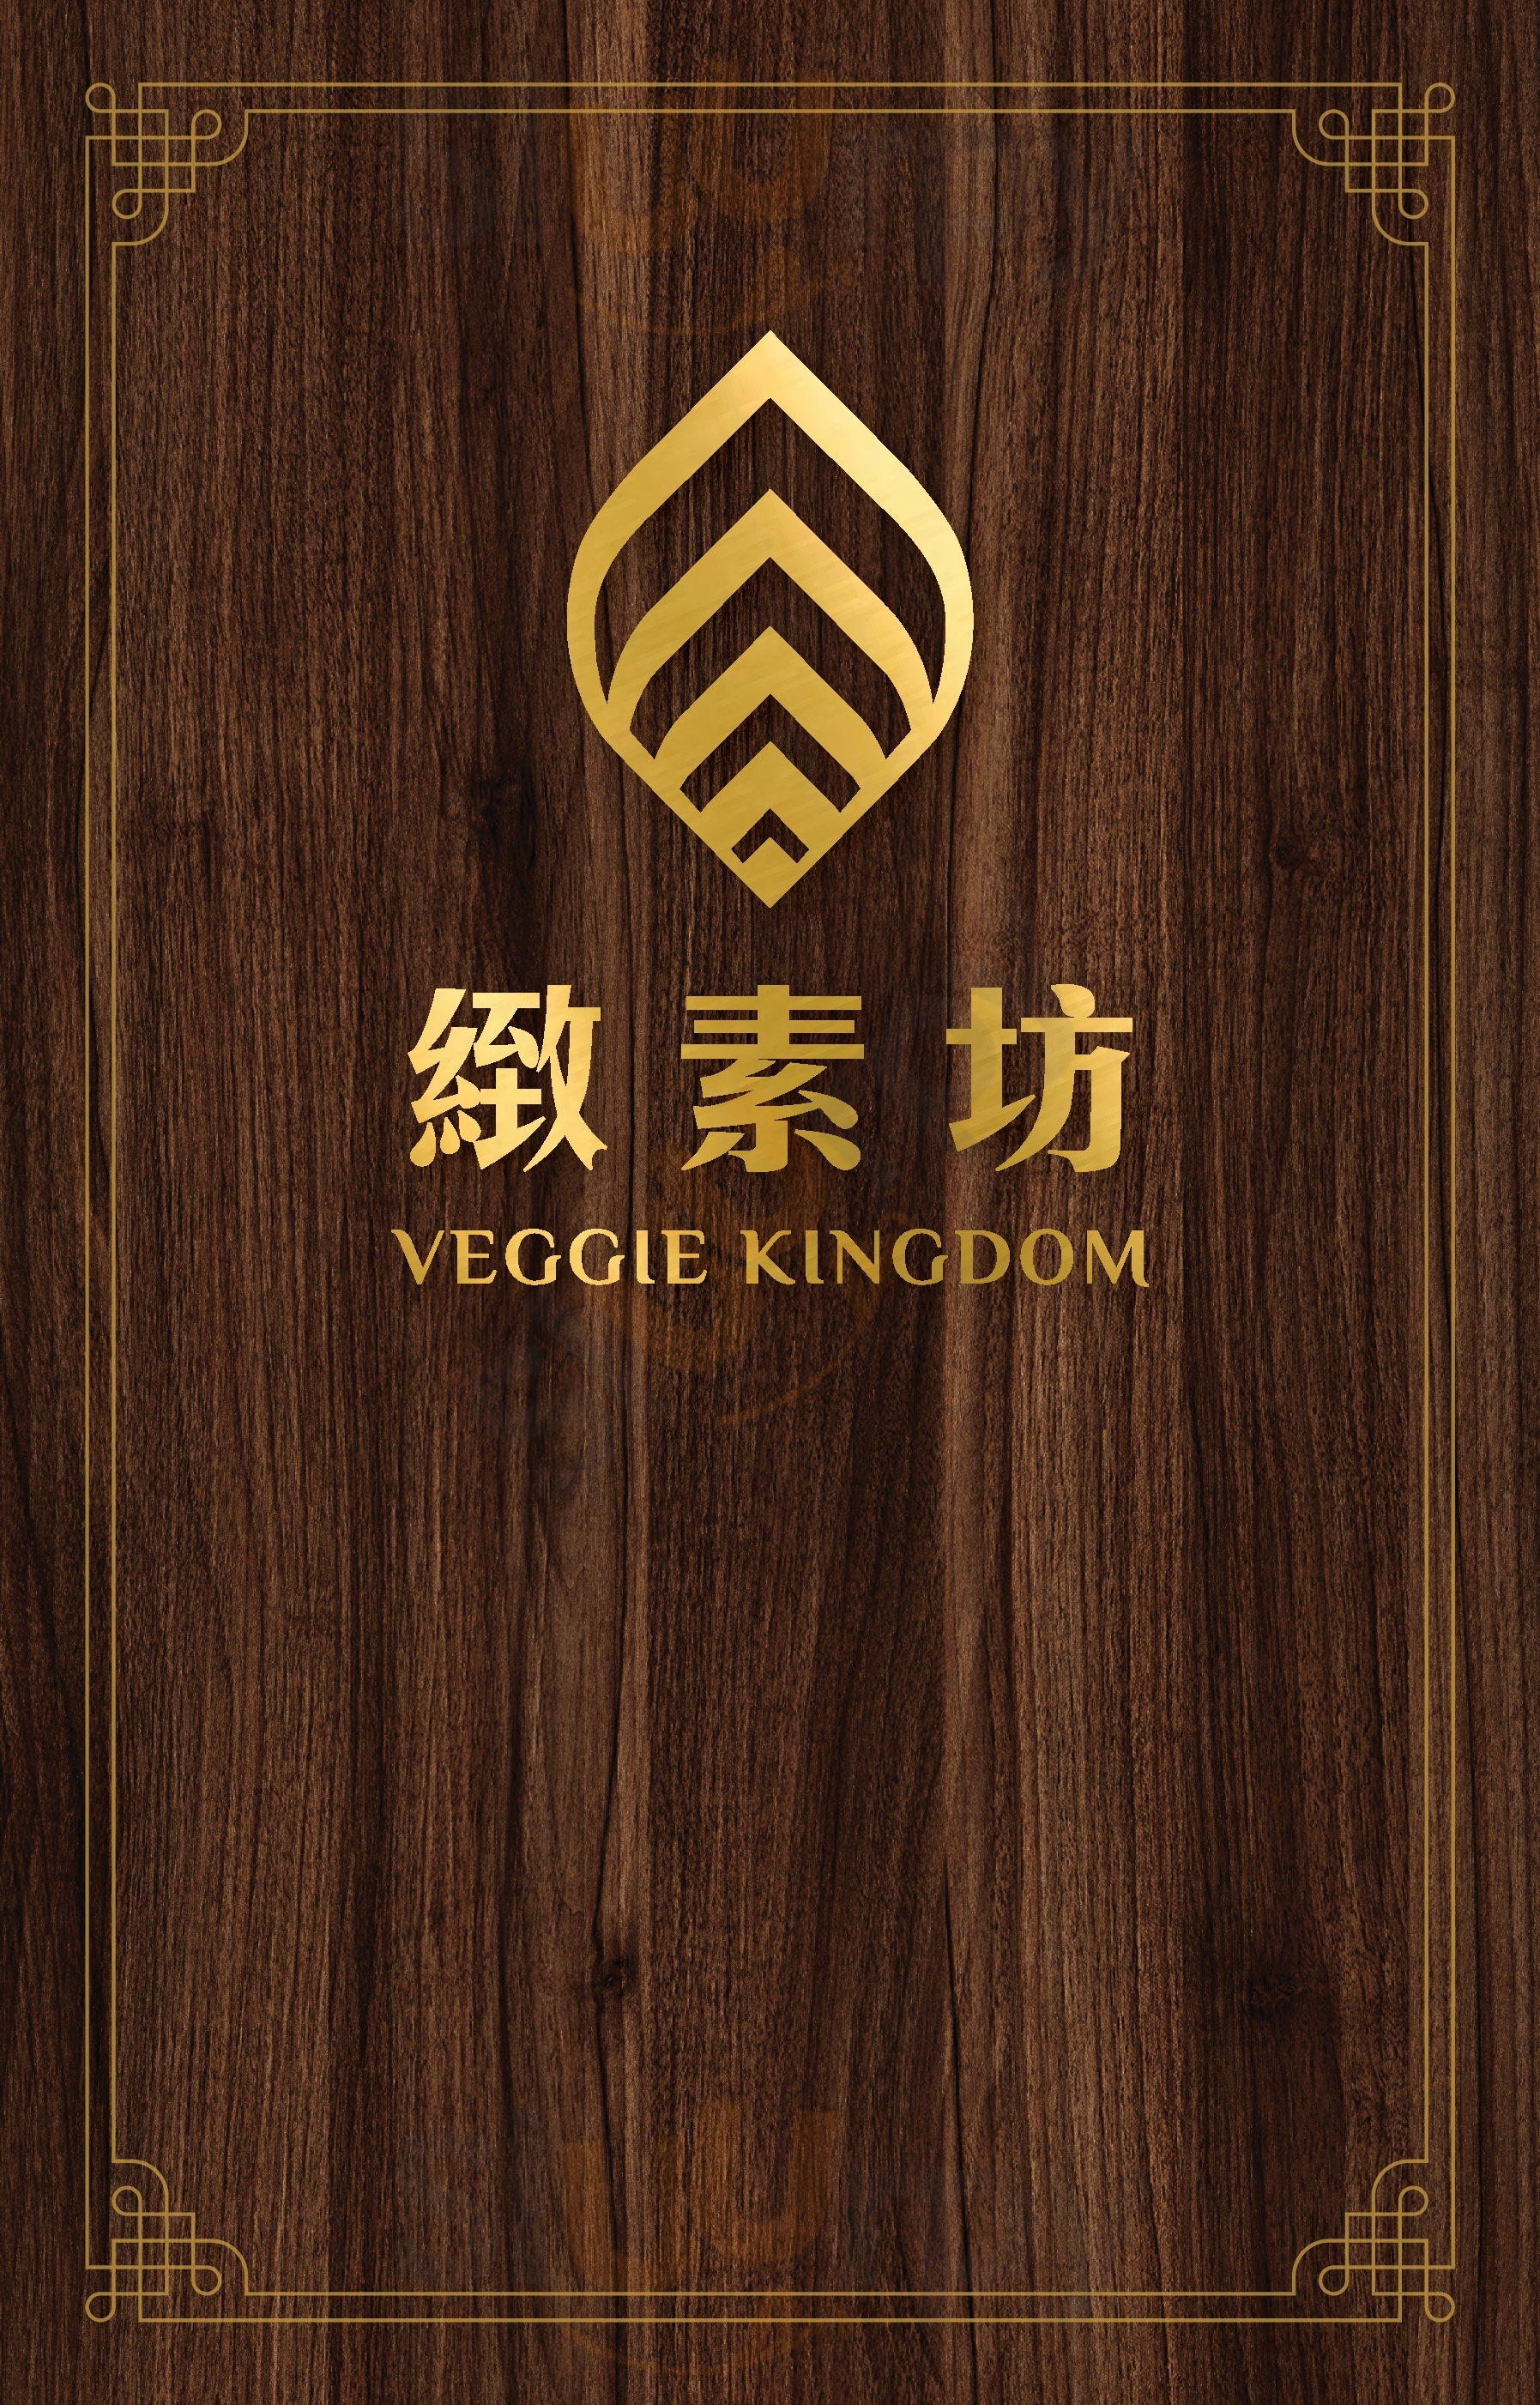 Veggie Kingdom 香港 Menu - 1